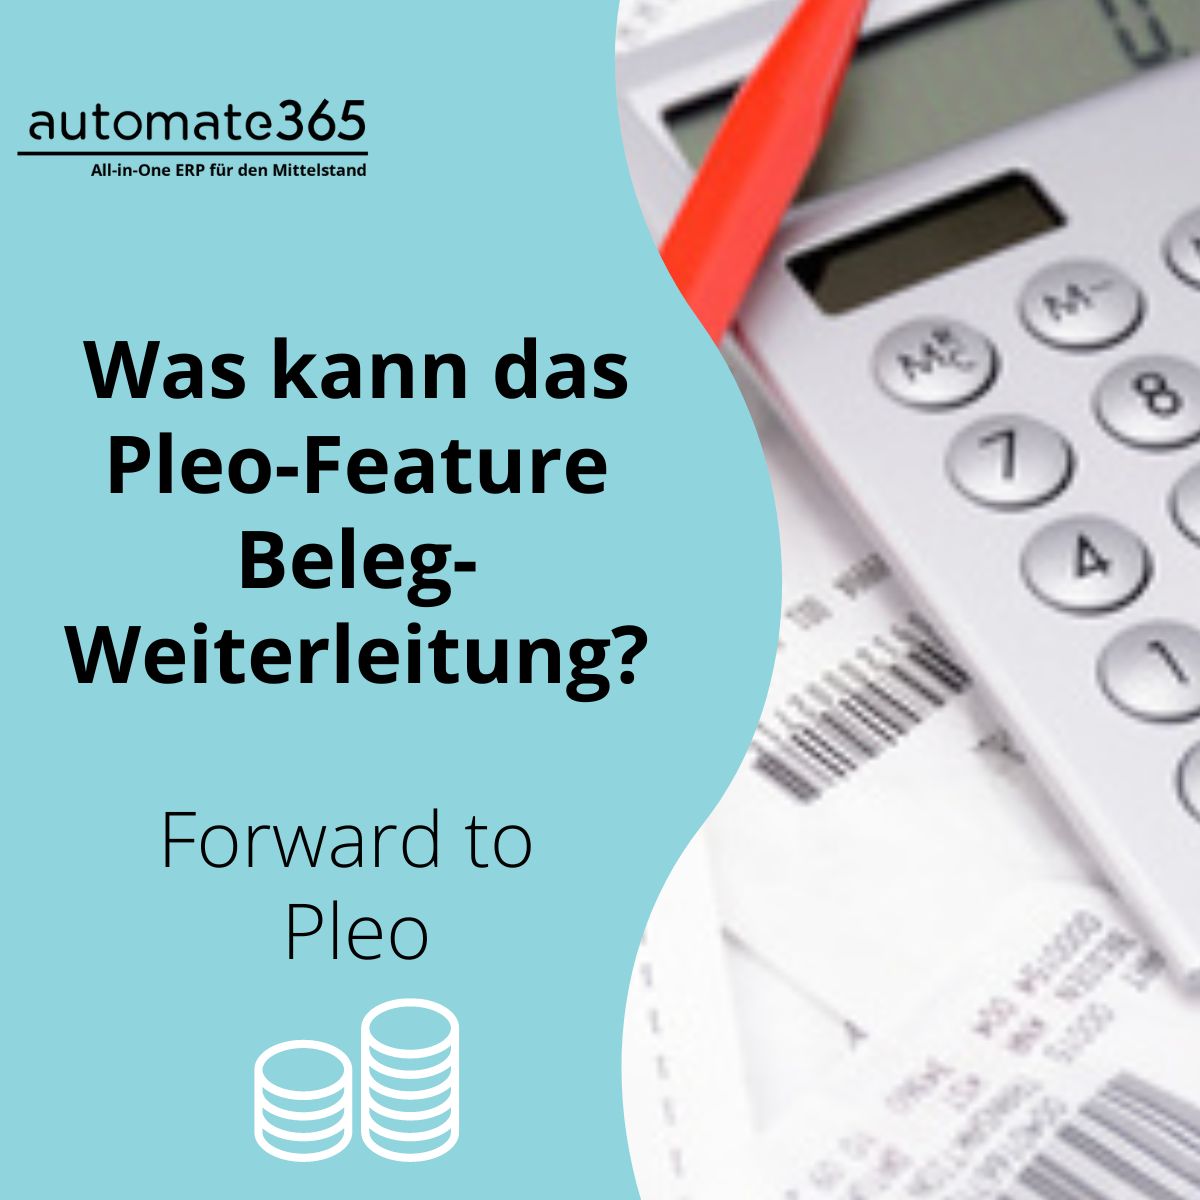 Forward to Pleo: Was kann die Beleg-Weiterleitung?